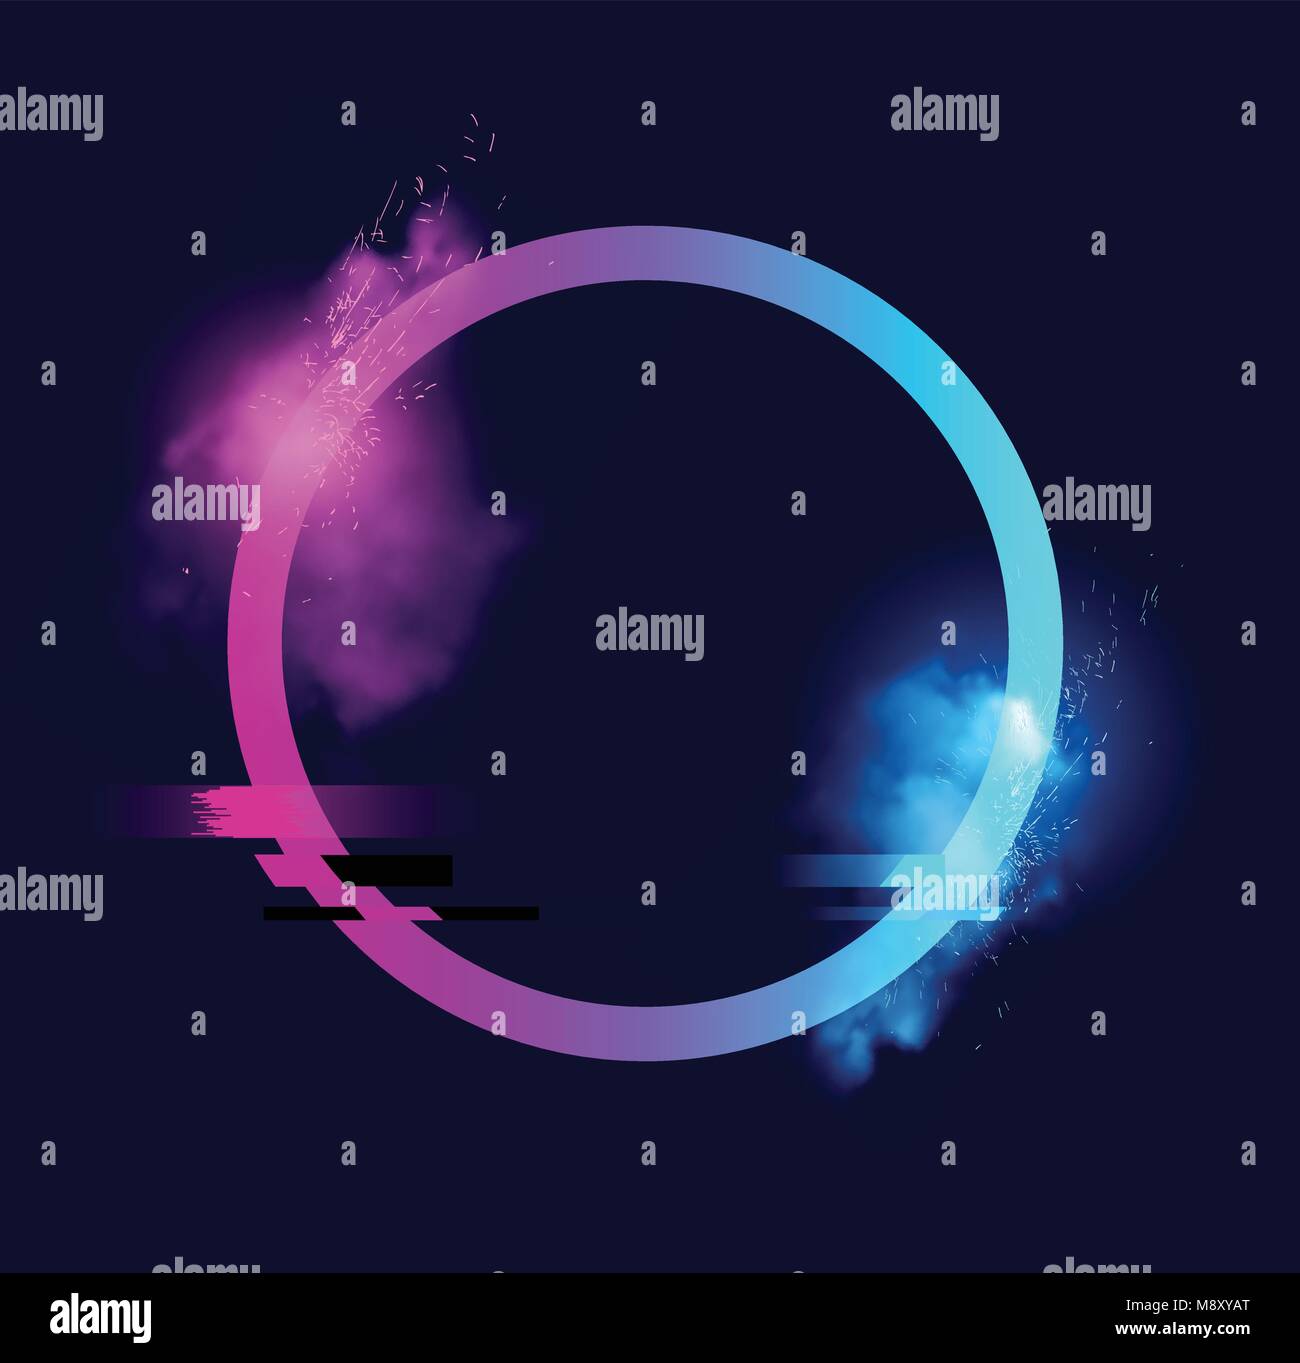 Un cerchio illuminato con scintille, fumo e un effetto di glitch. La minima illustrazione vettoriale design. Illustrazione Vettoriale